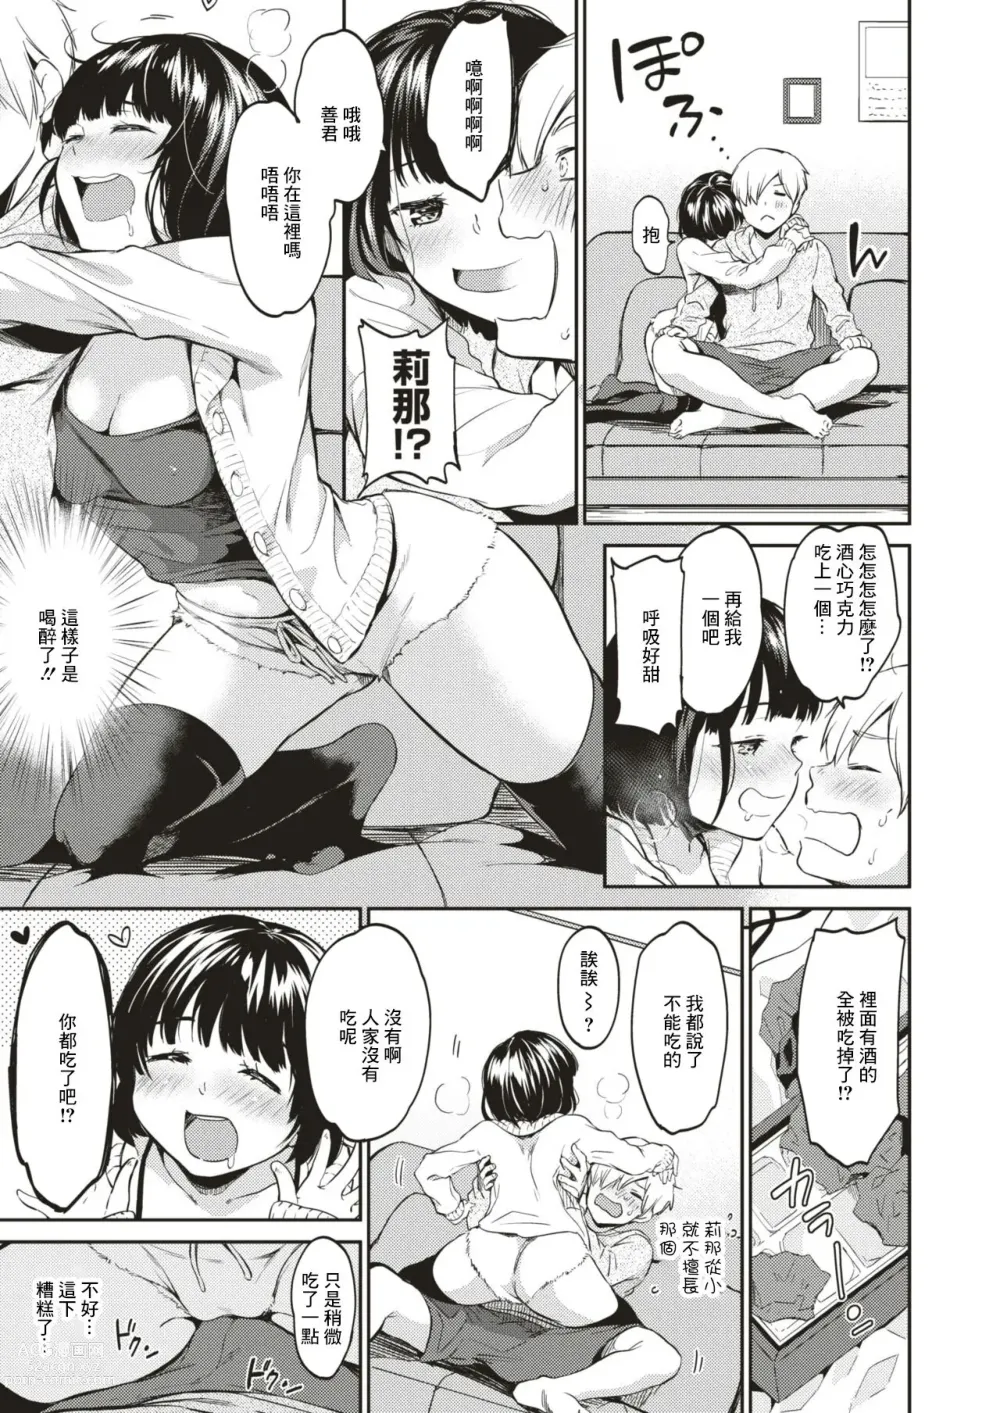 Page 3 of manga Yodare no Hoshi